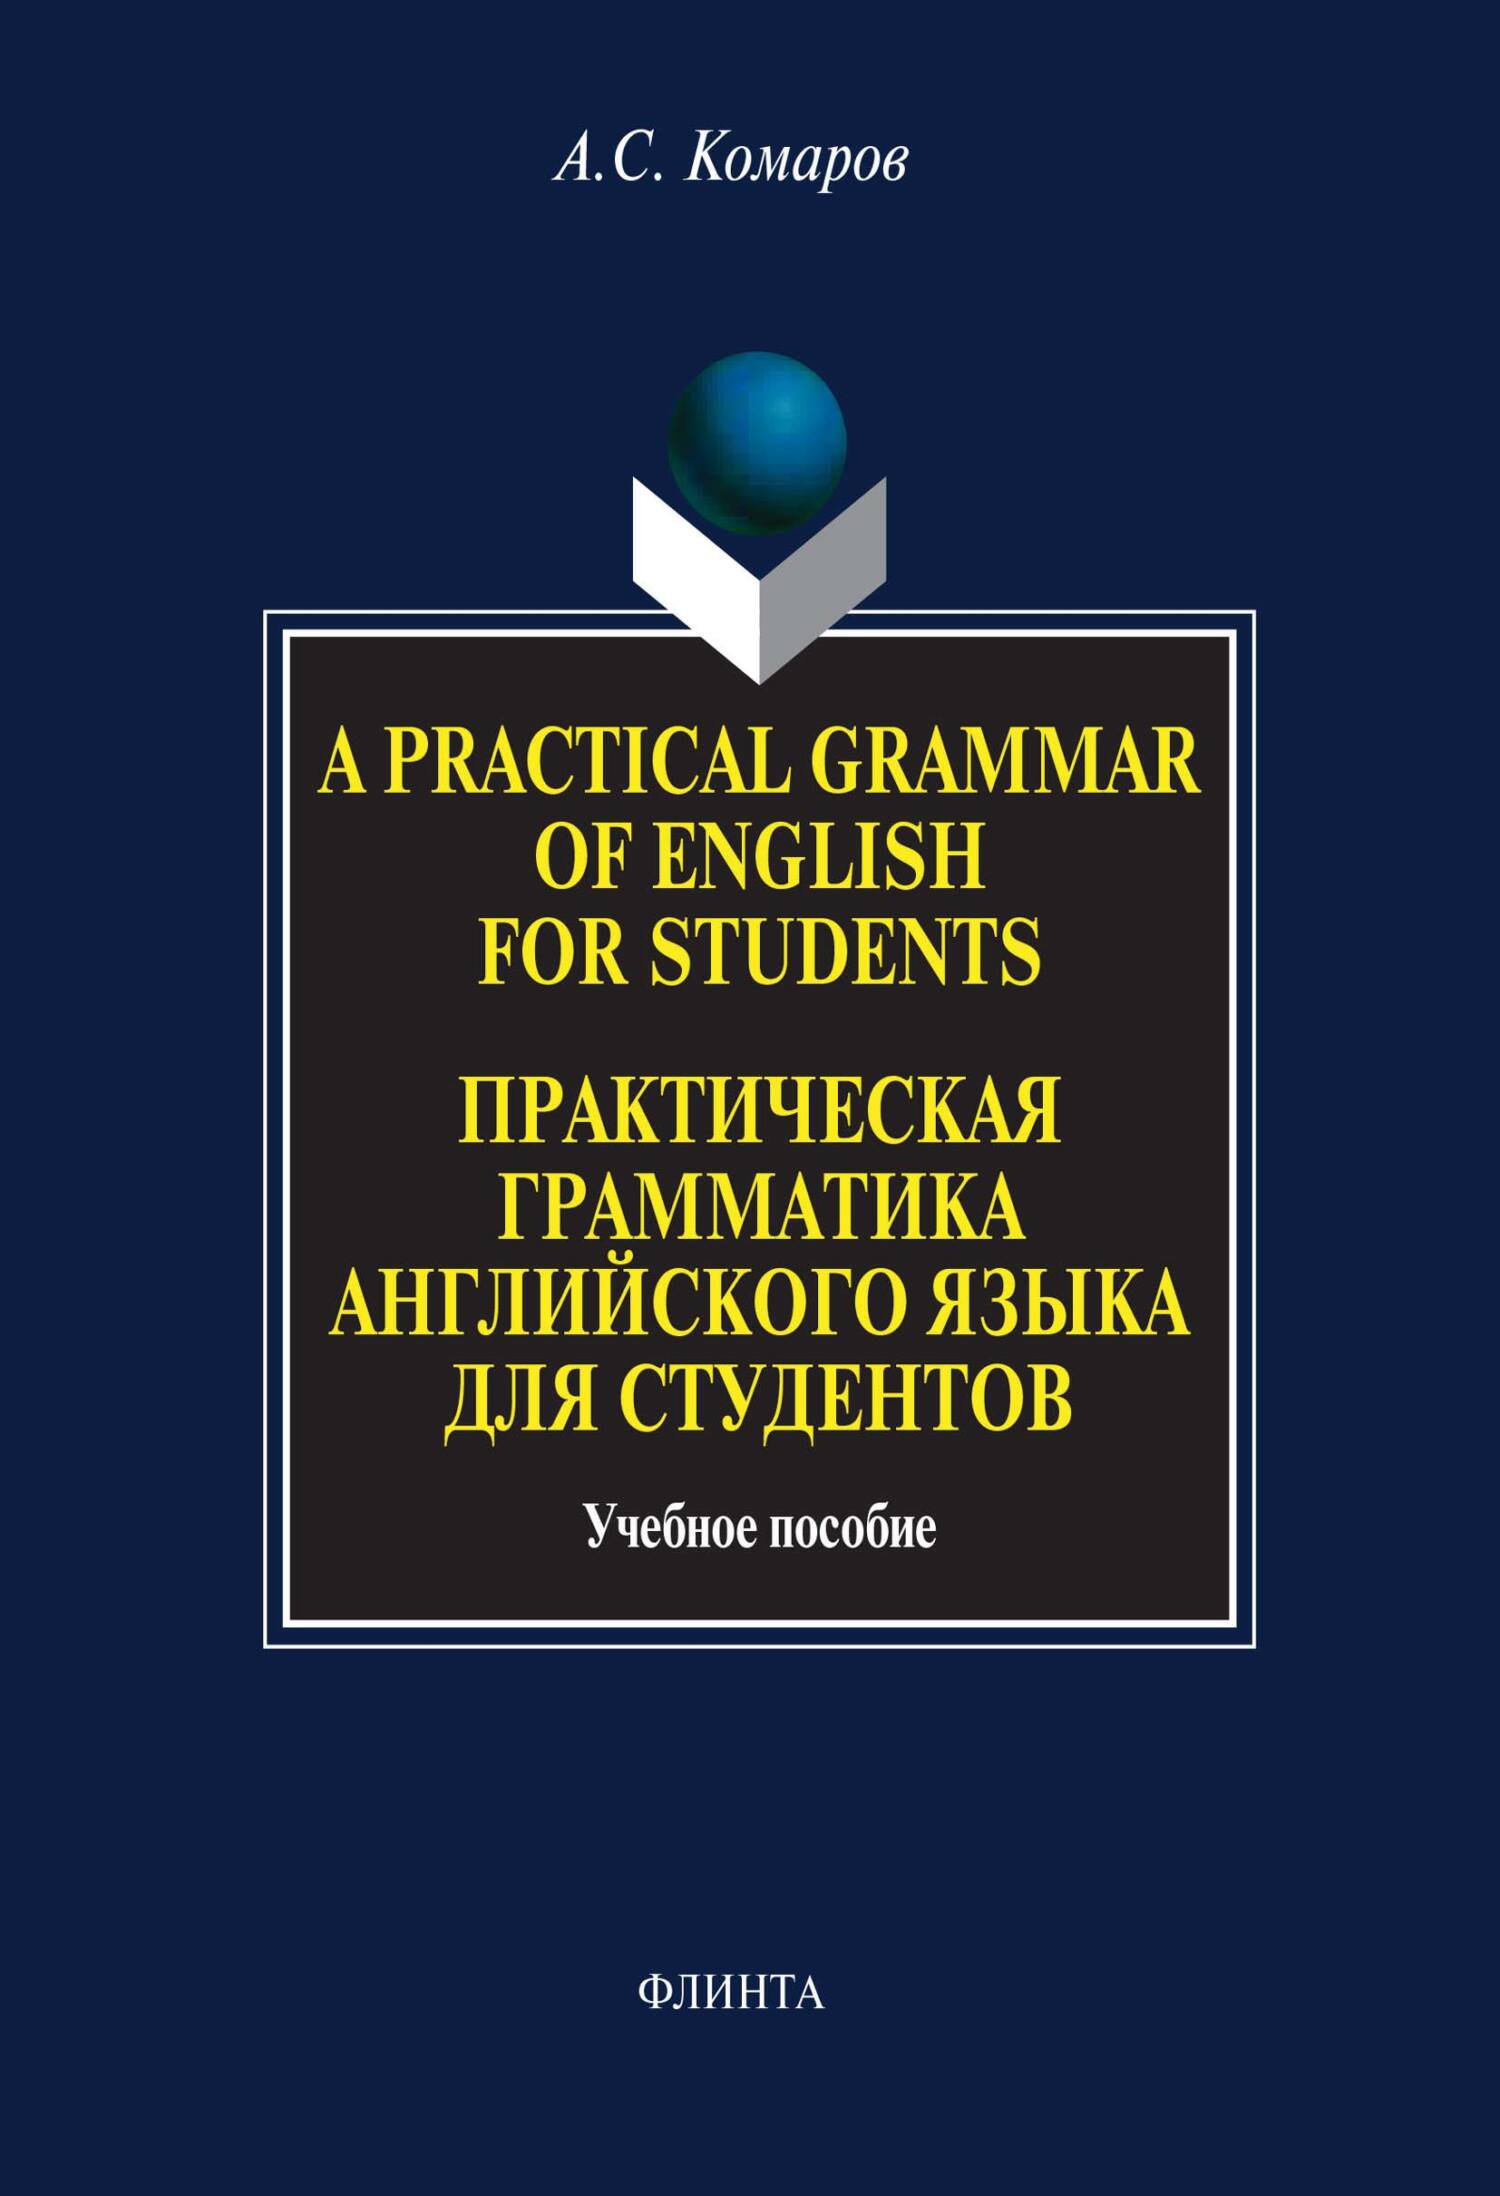 A Practical Grammar of English for Students.Практическая грамматика английского языка для студентов. Учебное пособие